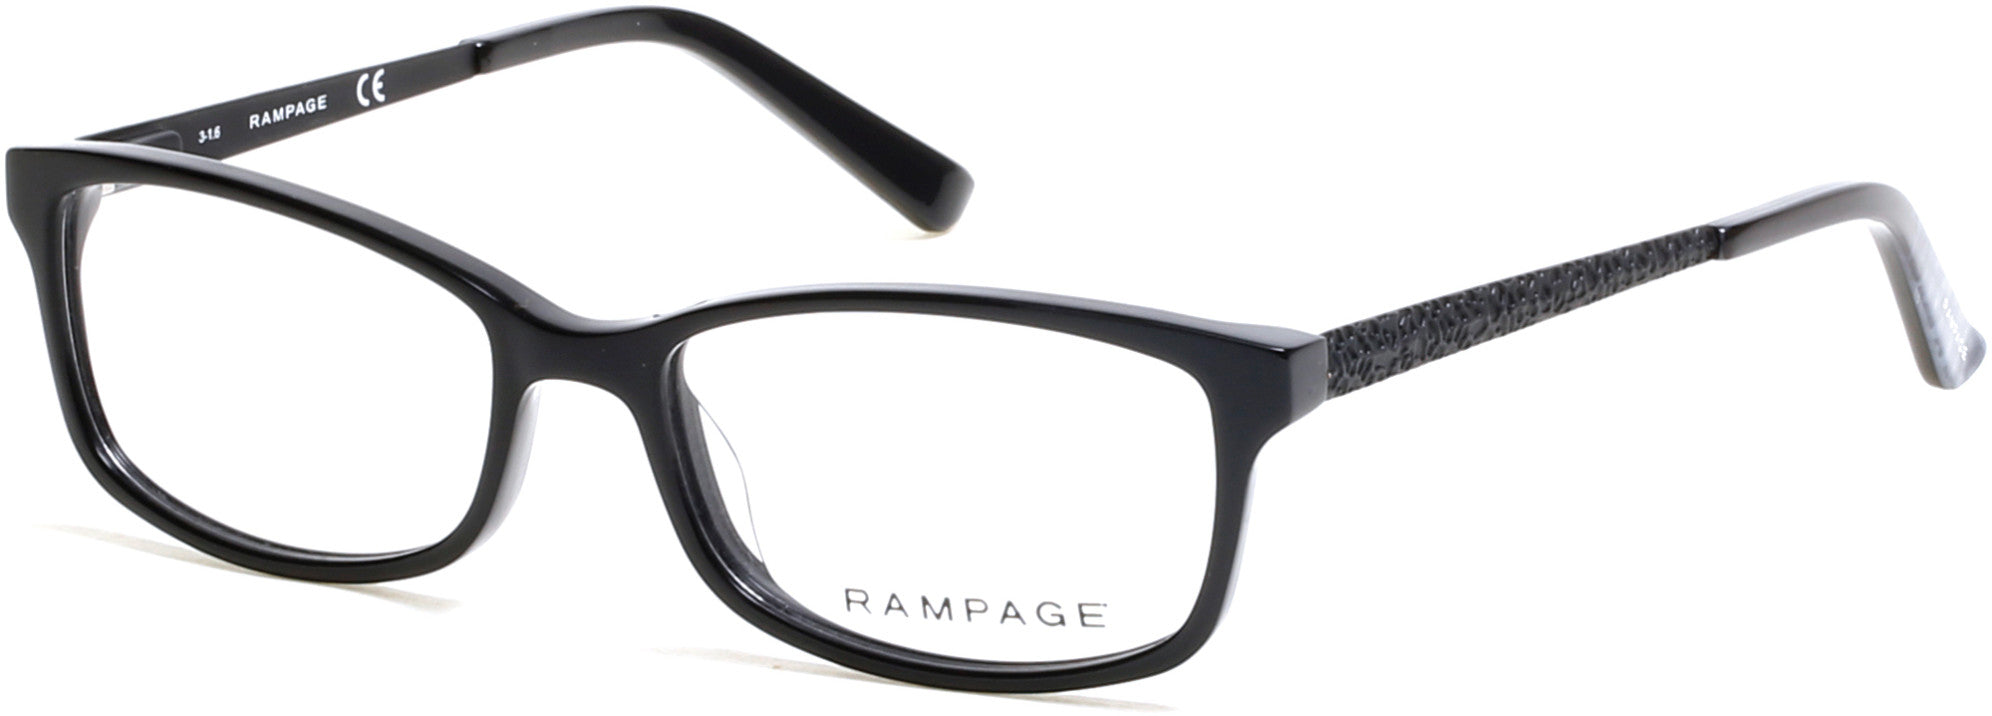 Rampage Geometric RA0207 Eyeglasses 001-001 - Shiny Black